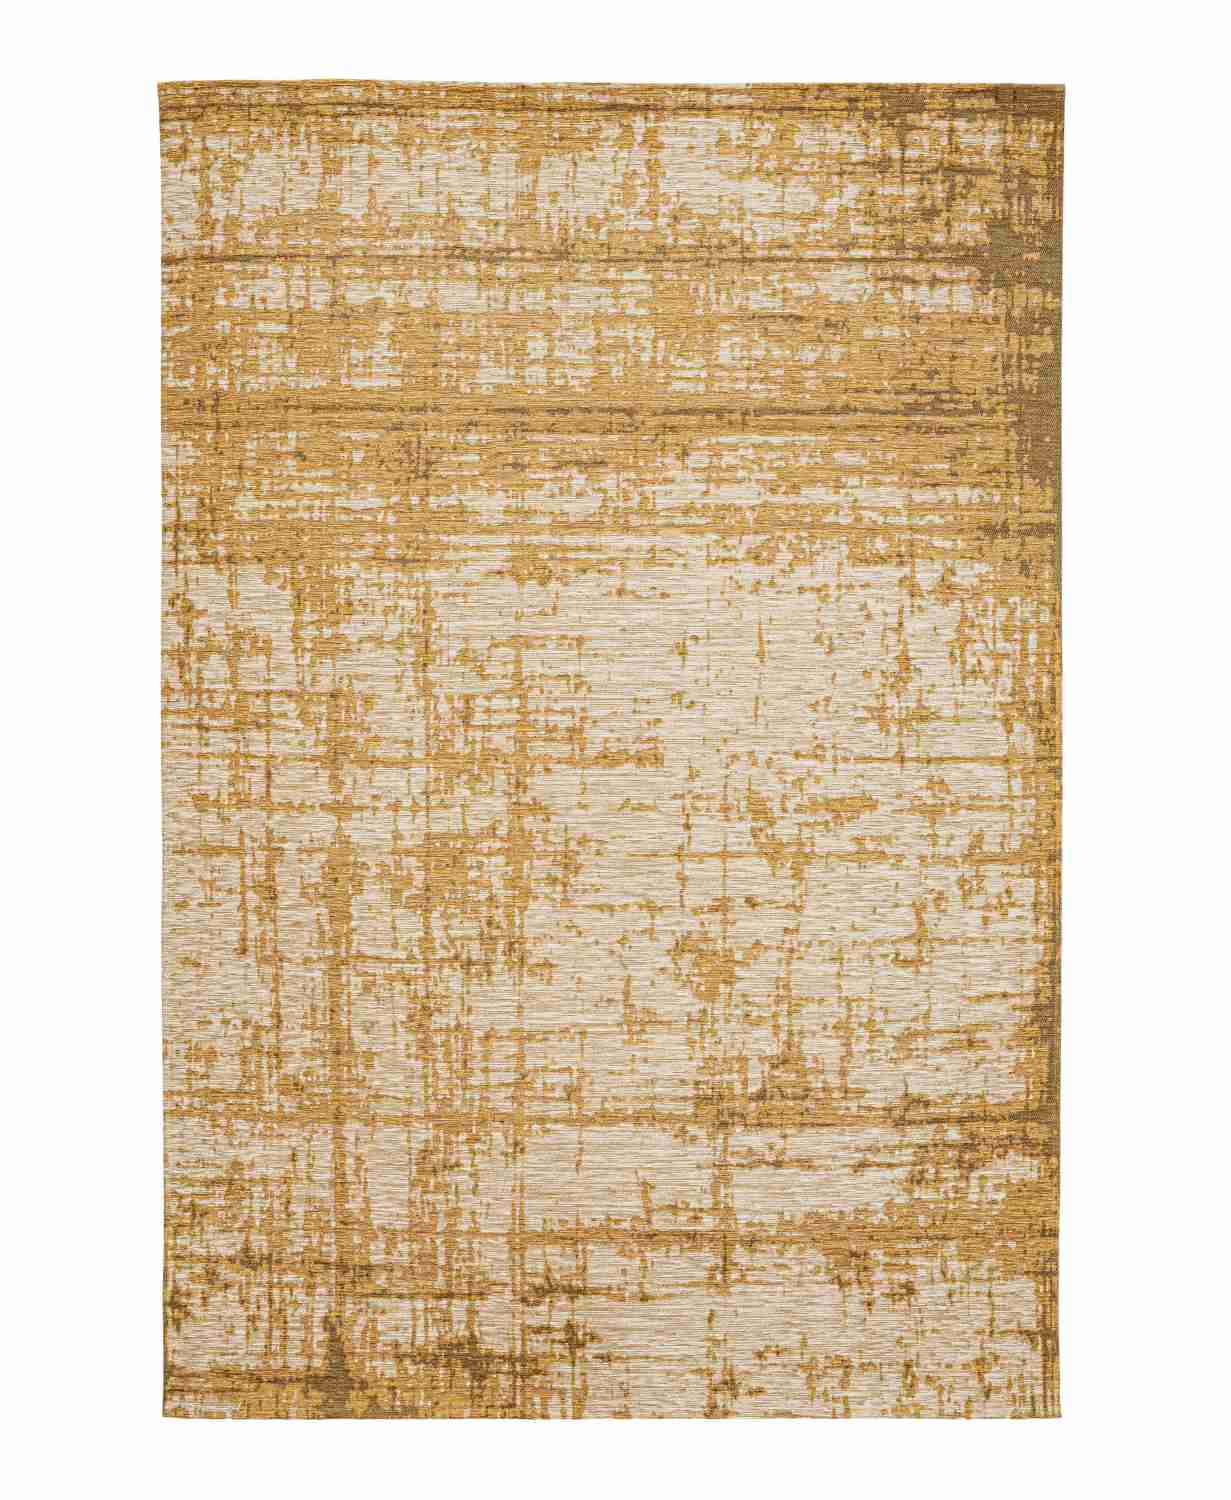 Der Teppich Yuno überzeugt mit seinem modernen Design. Gefertigt wurde die Vorderseite aus 50% Chenille, 30% Polyester und 20% Baumwolle, die Rückseite ist aus Latex. Der Teppich besitzt eine Senf Farbton und die Maße von 155x230 cm.